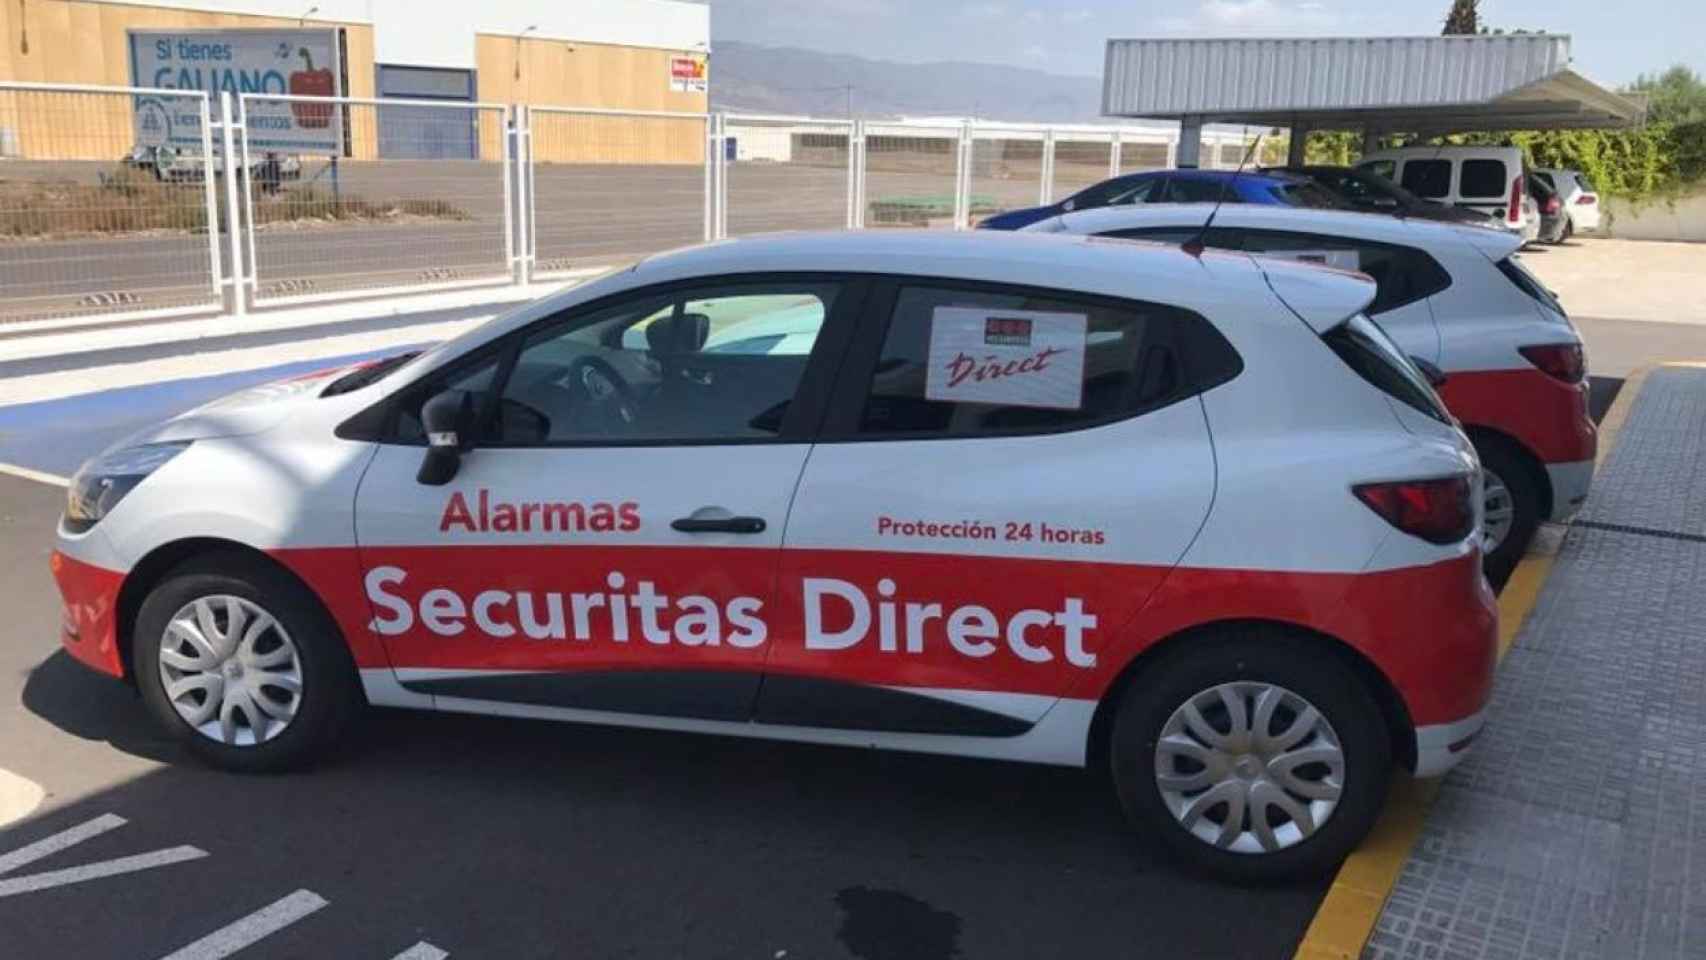 Alarmas para coches con aviso al móvil - Securitas Direct